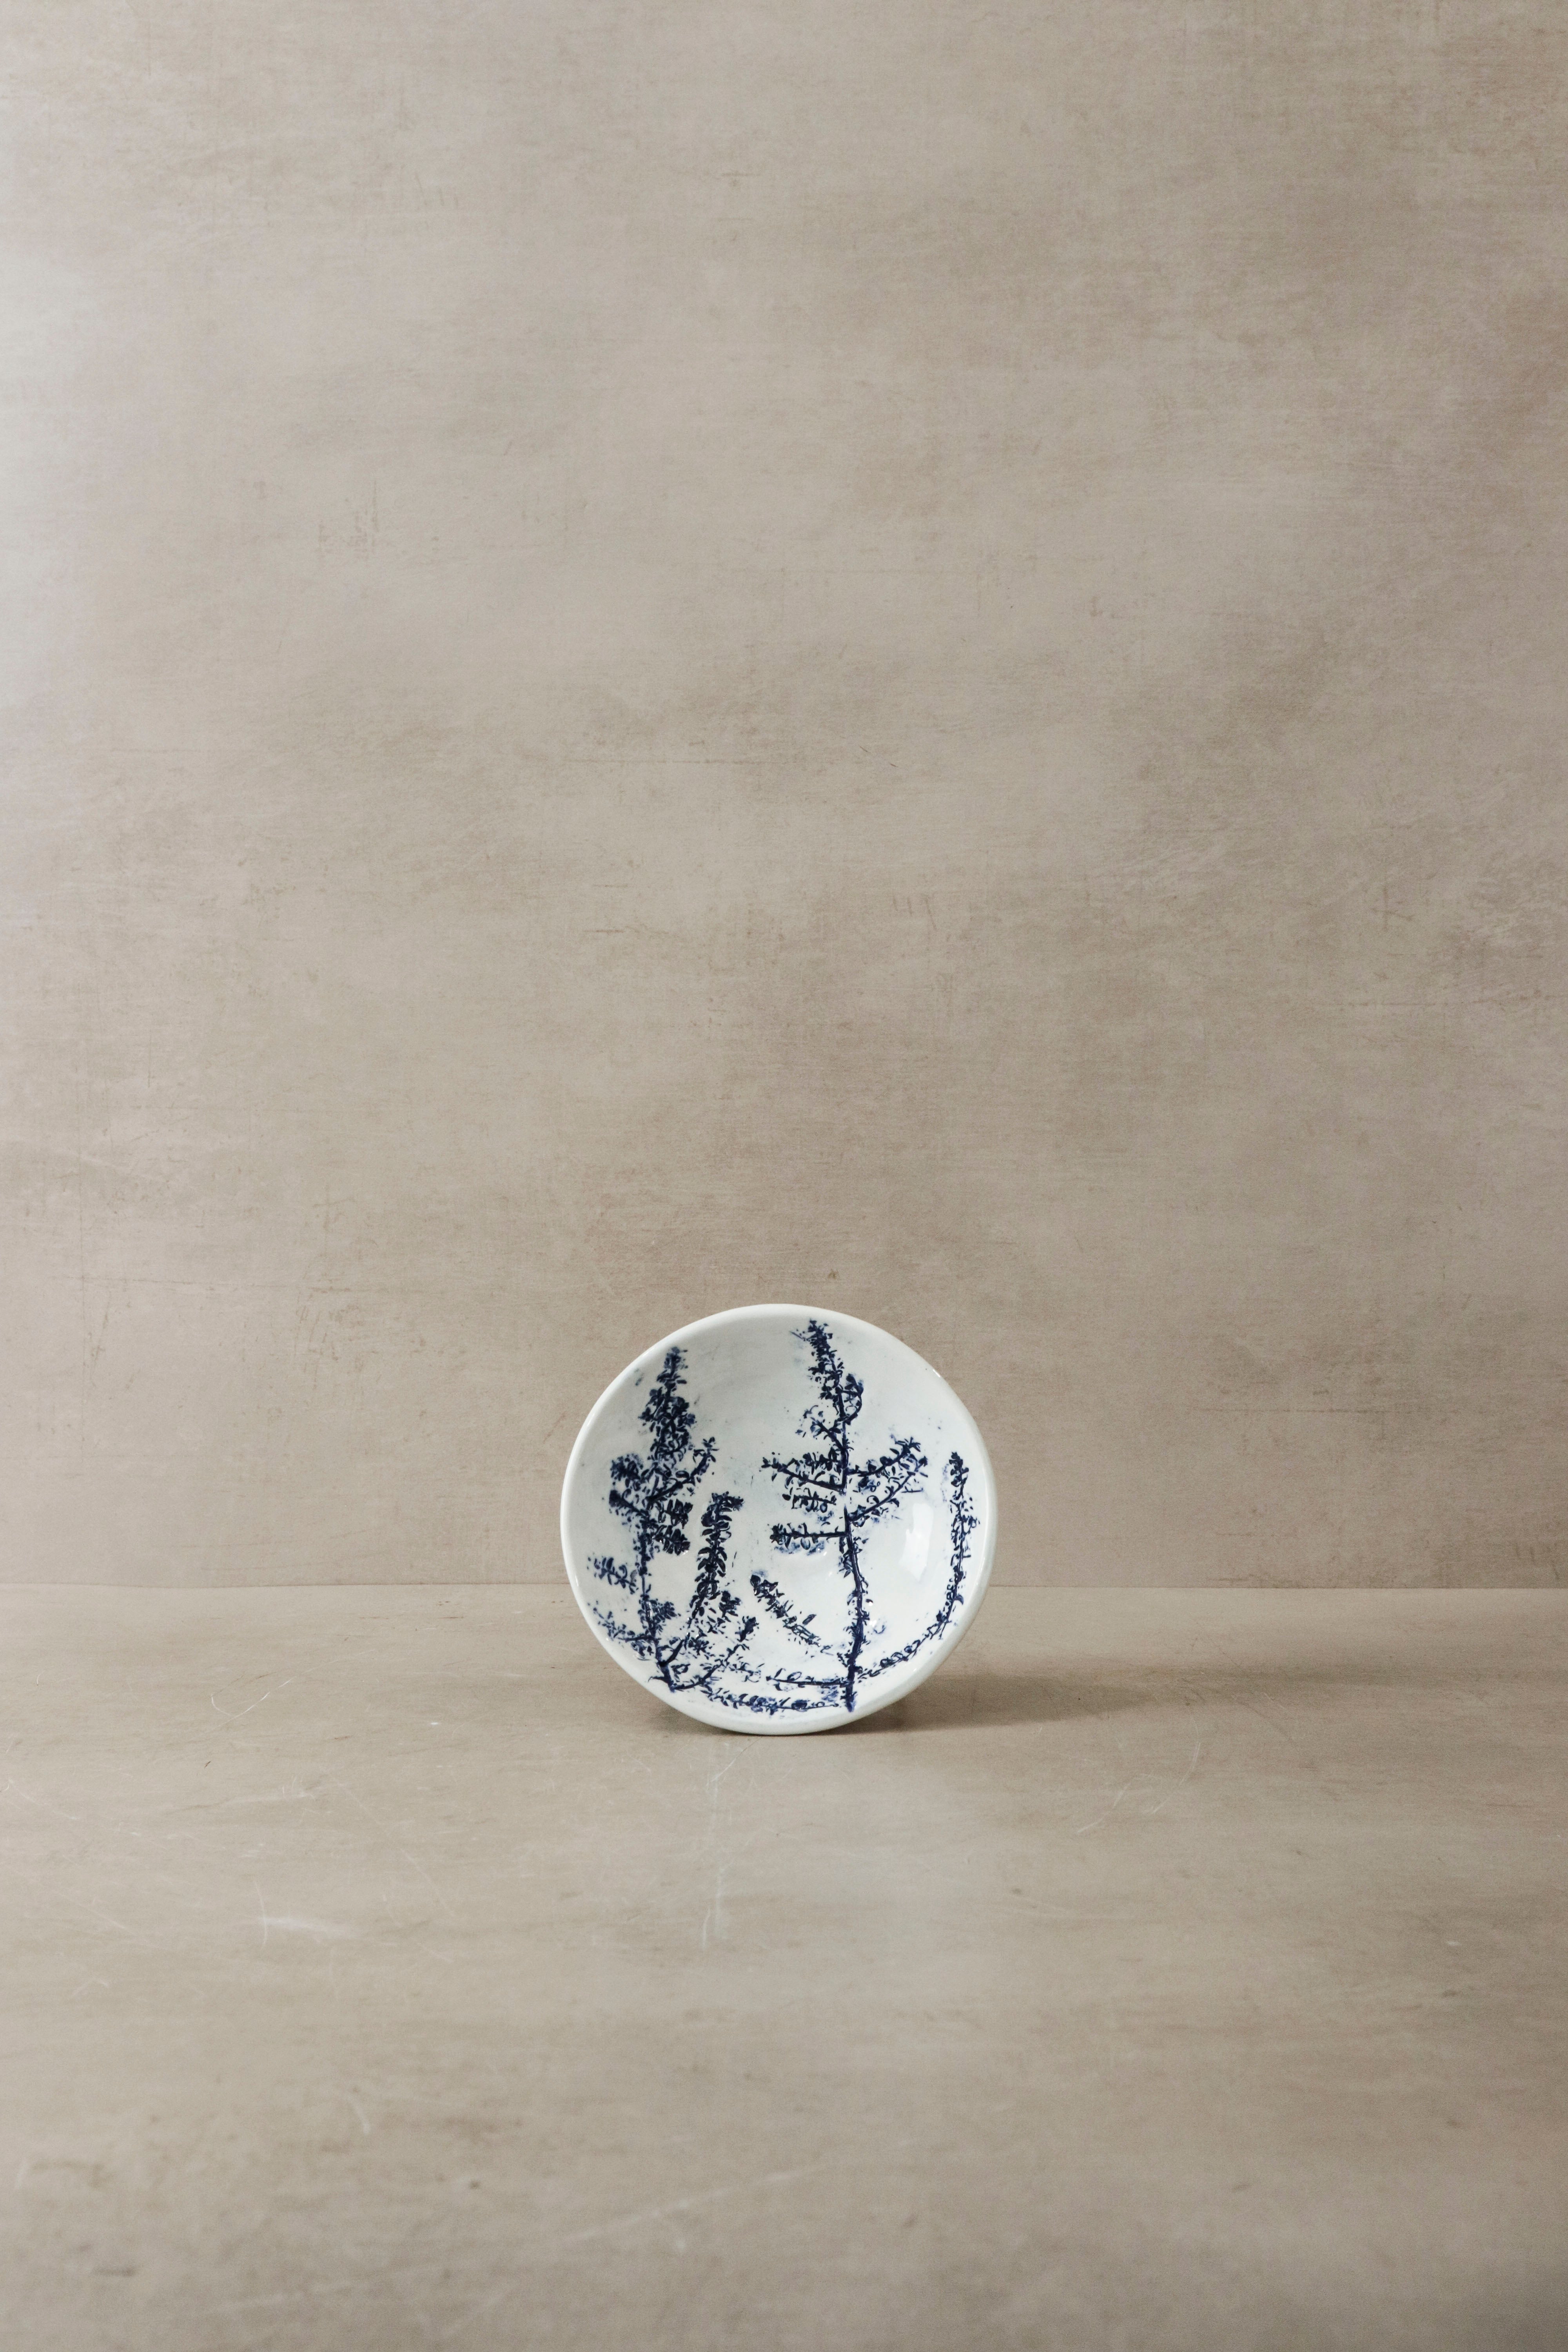 botanicalboysuk Cobalt Blue Fynbos Ceramic Plate - N°11